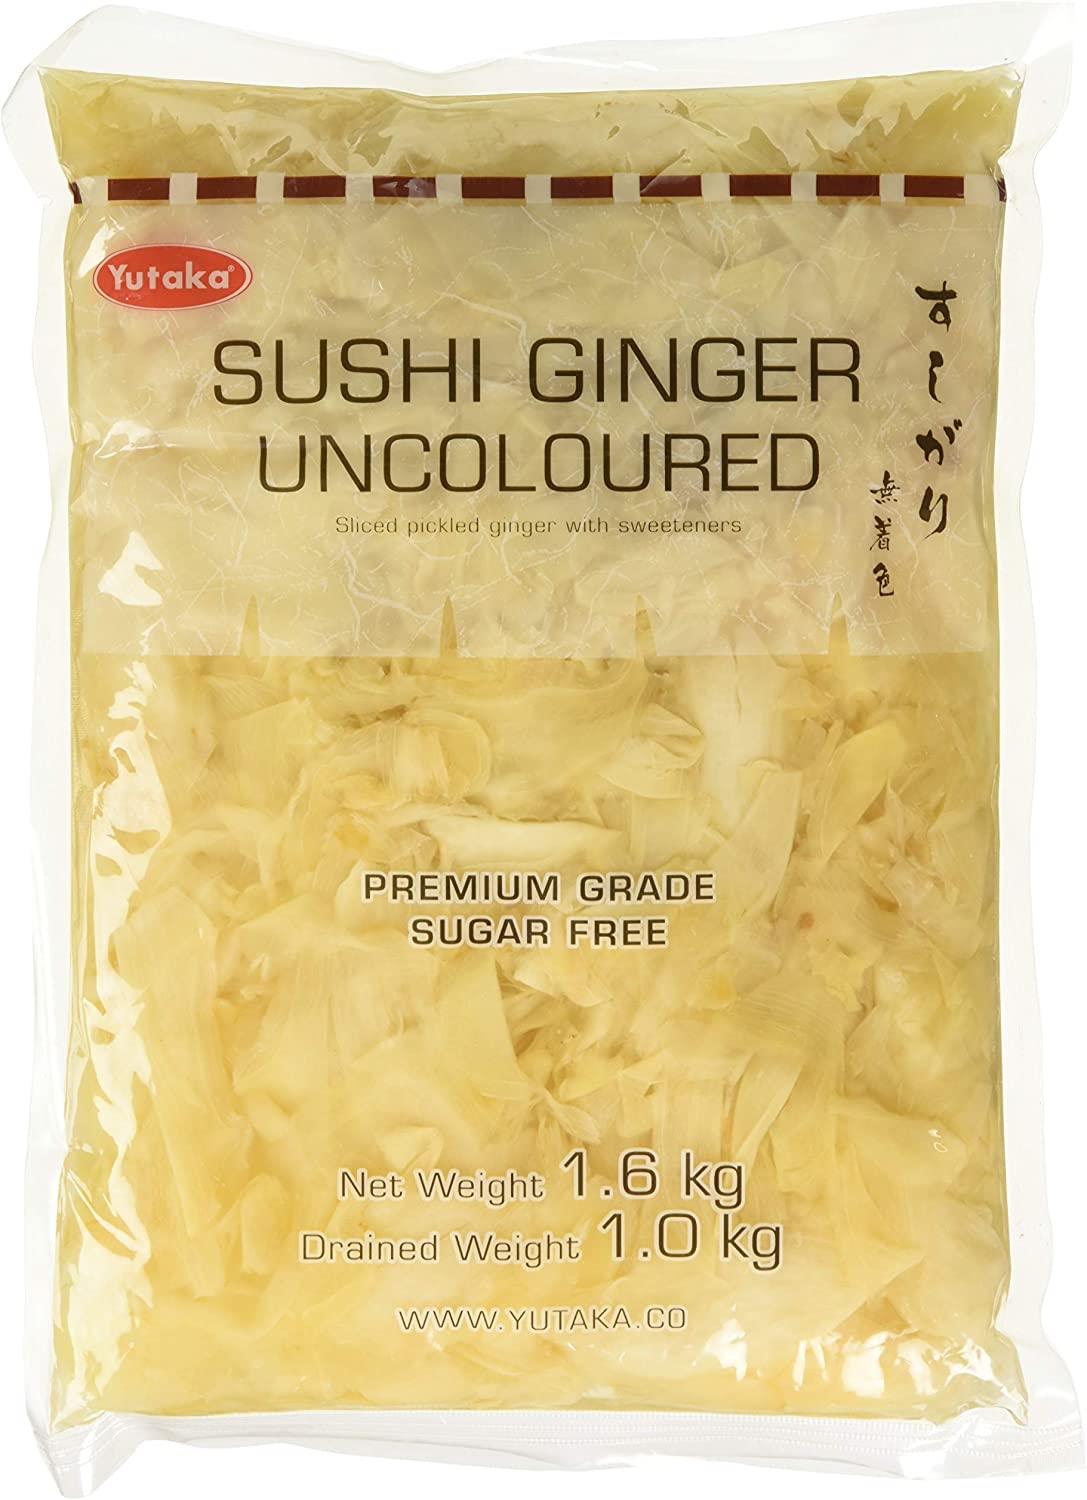 Yutaka Premium Grade NON COLOURED Sushi Ginger 1.6kg